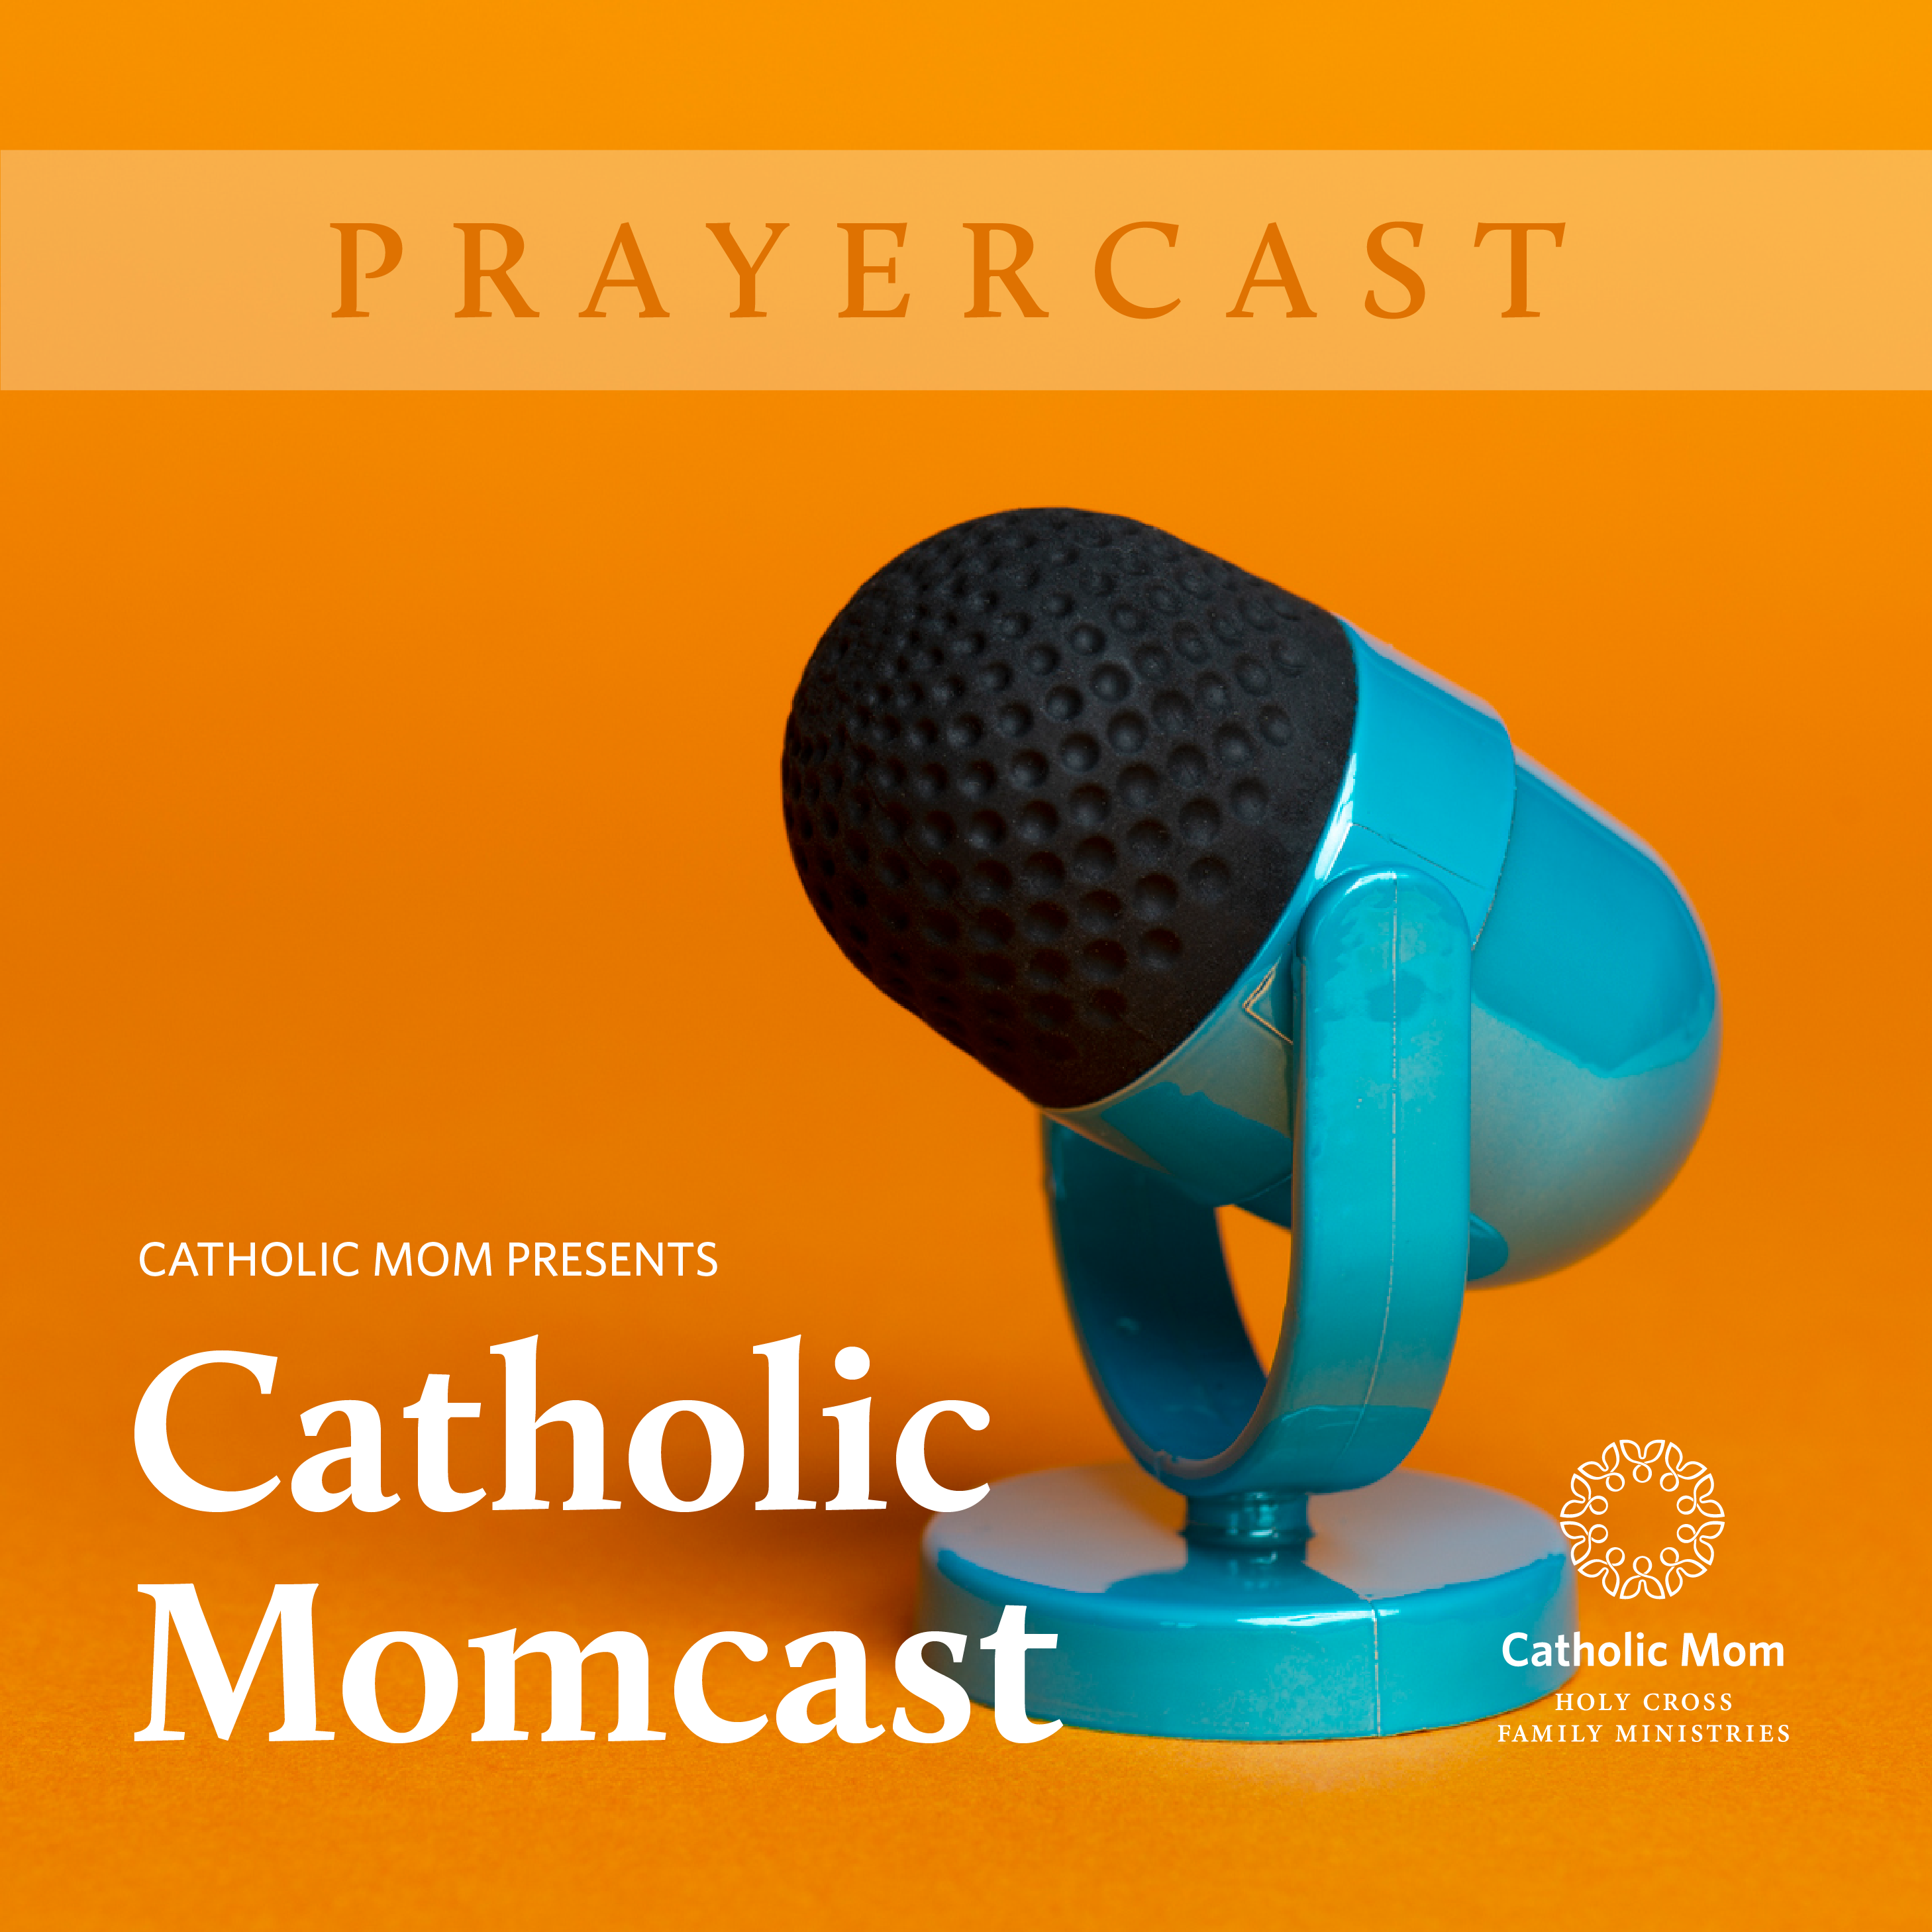 Prayer cast_Momcast-3